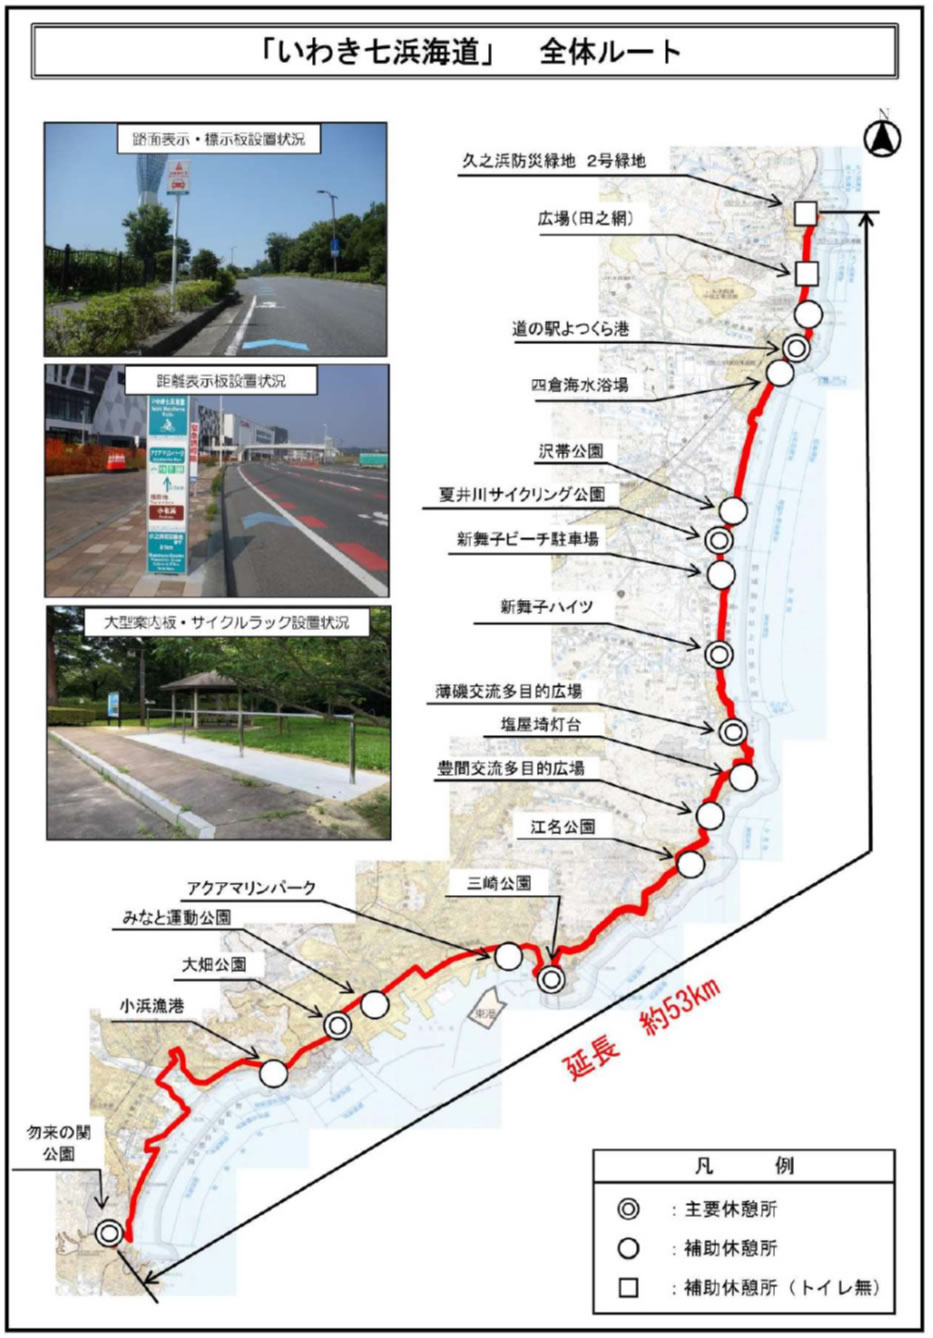 いわき七浜海道全体ルートマップ画像